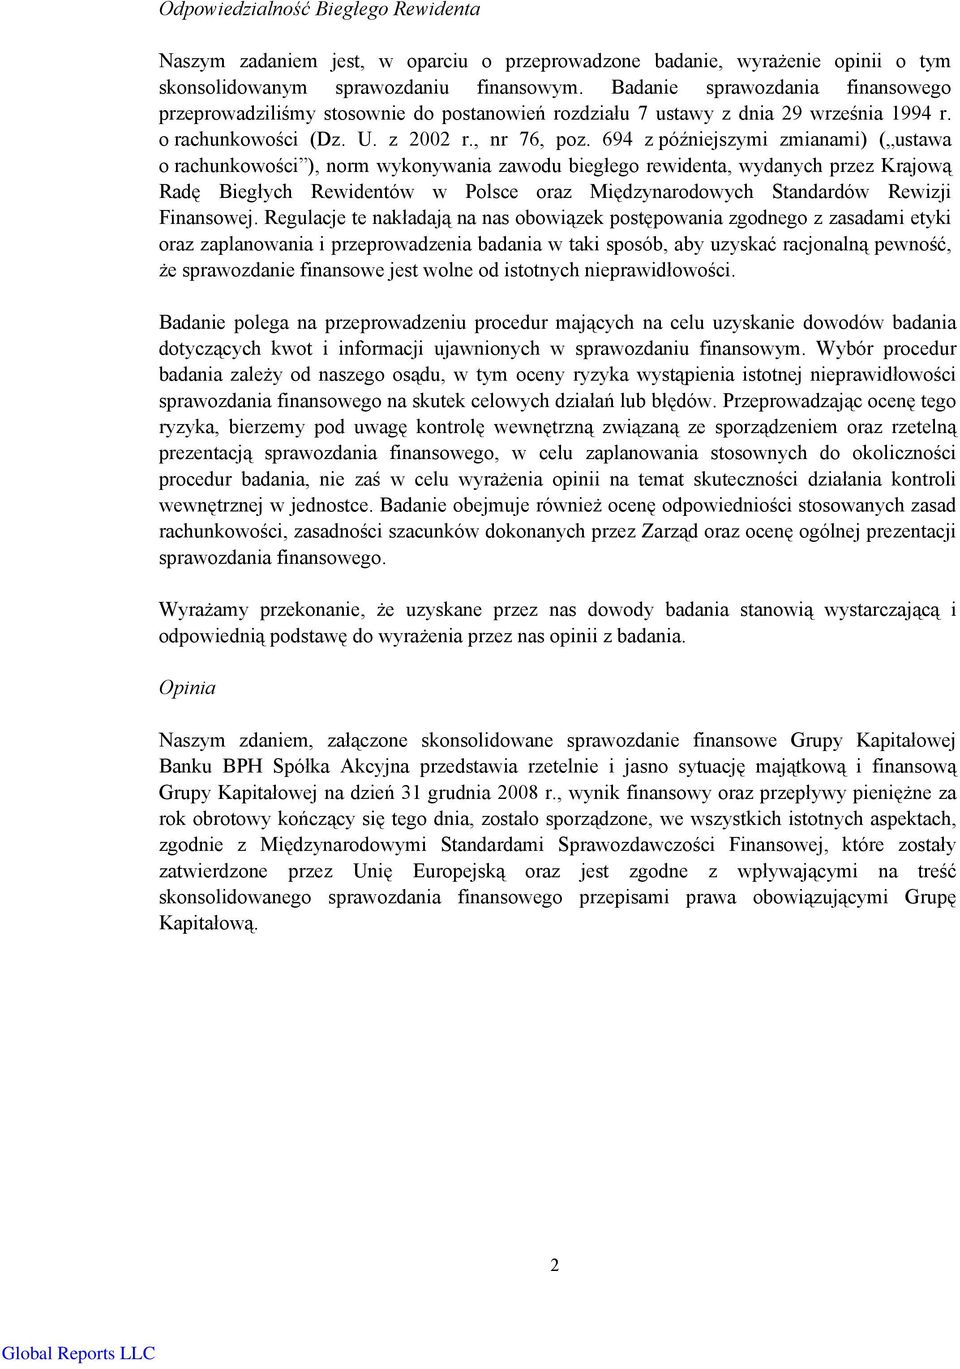 694 z późniejszymi zmianami) ( ustawa o rachunkowości ), norm wykonywania zawodu biegłego rewidenta, wydanych przez Krajową Radę Biegłych Rewidentów w Polsce oraz Międzynarodowych Standardów Rewizji